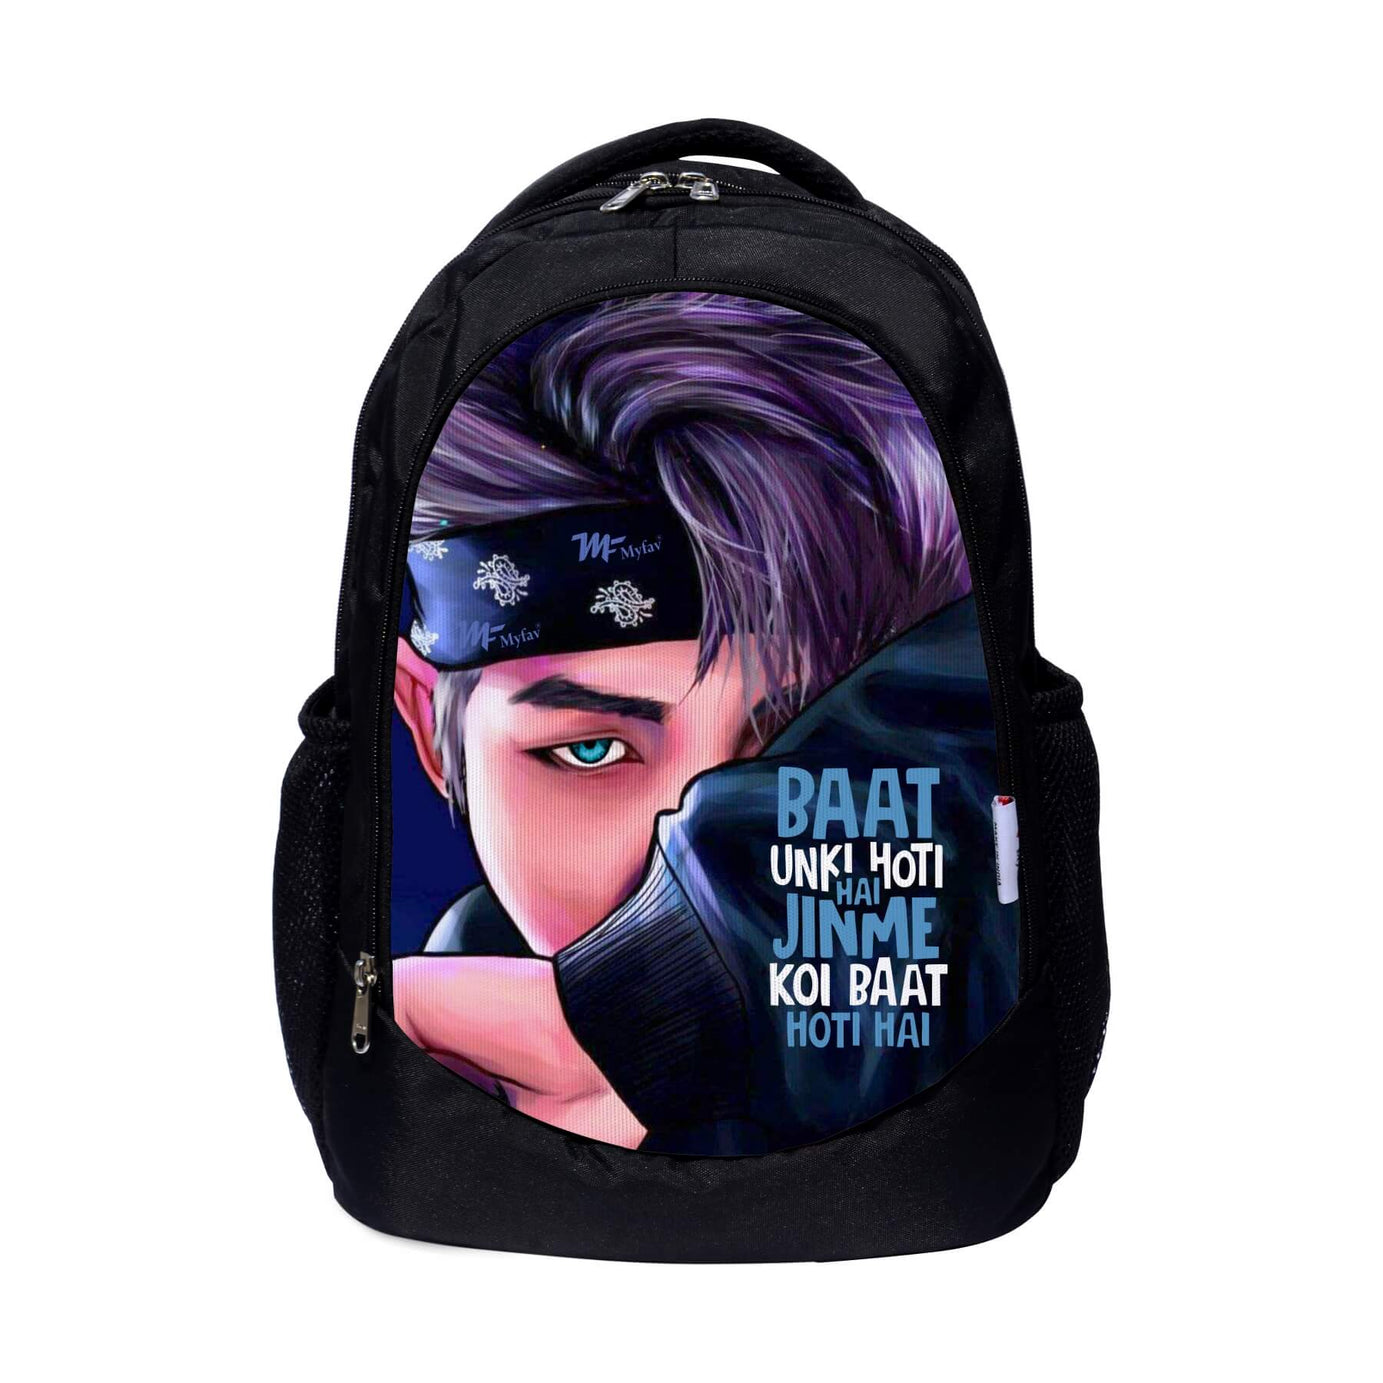 My Fav Motivational Quote Printed Laptop Backpack for Men Women / School Bag for Boys & Girls